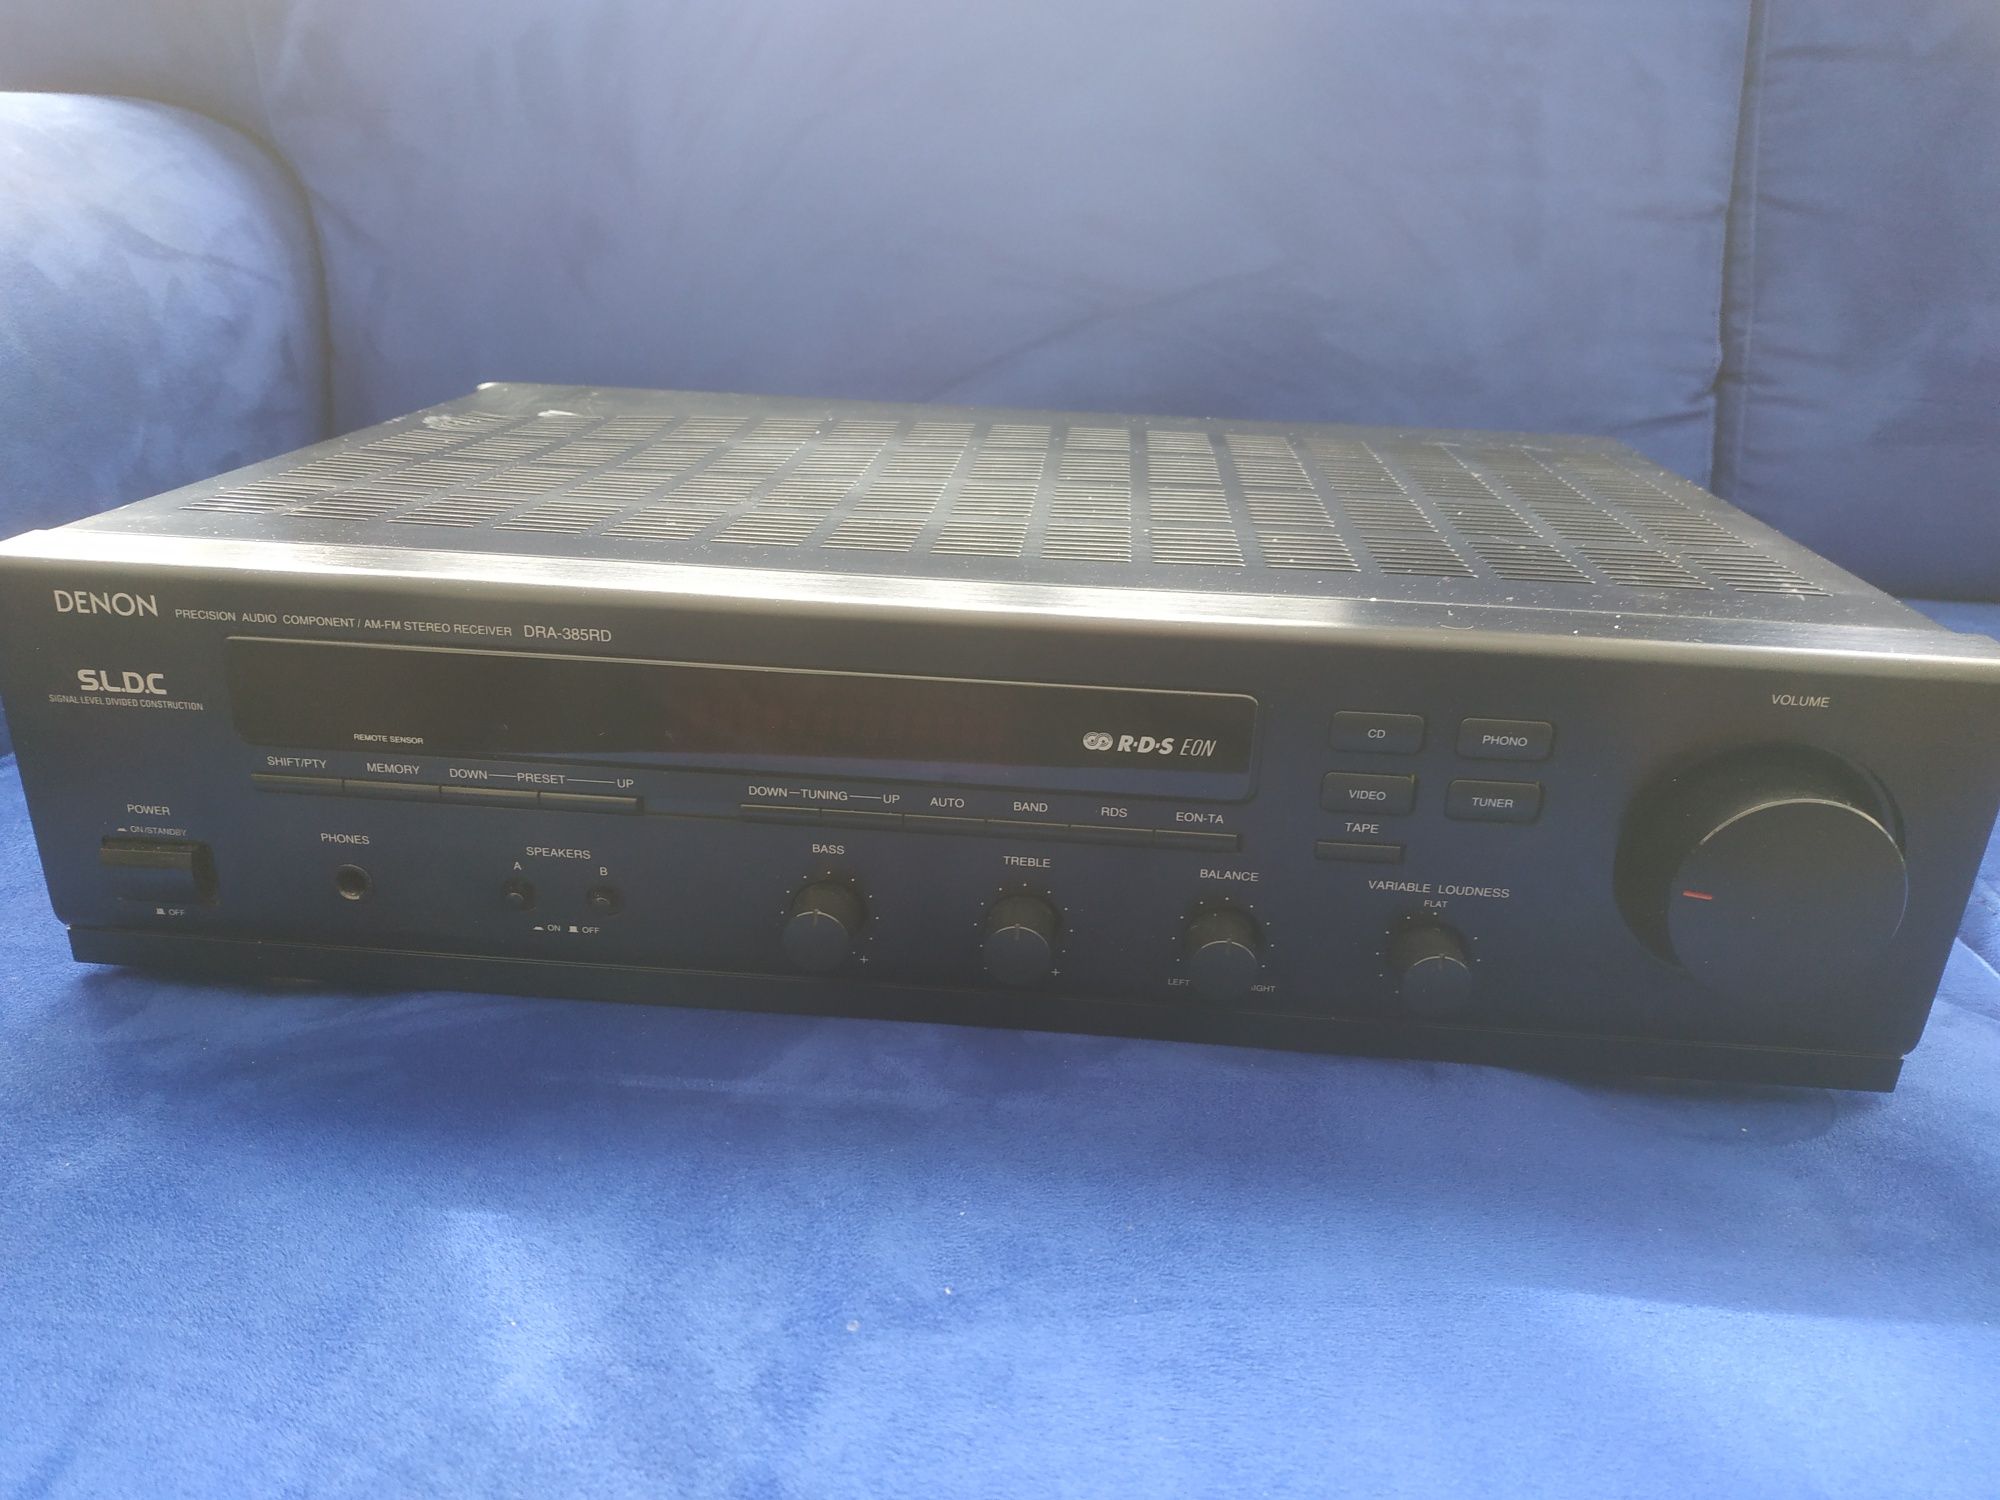 Denon dra-385rd - amplificador / radio